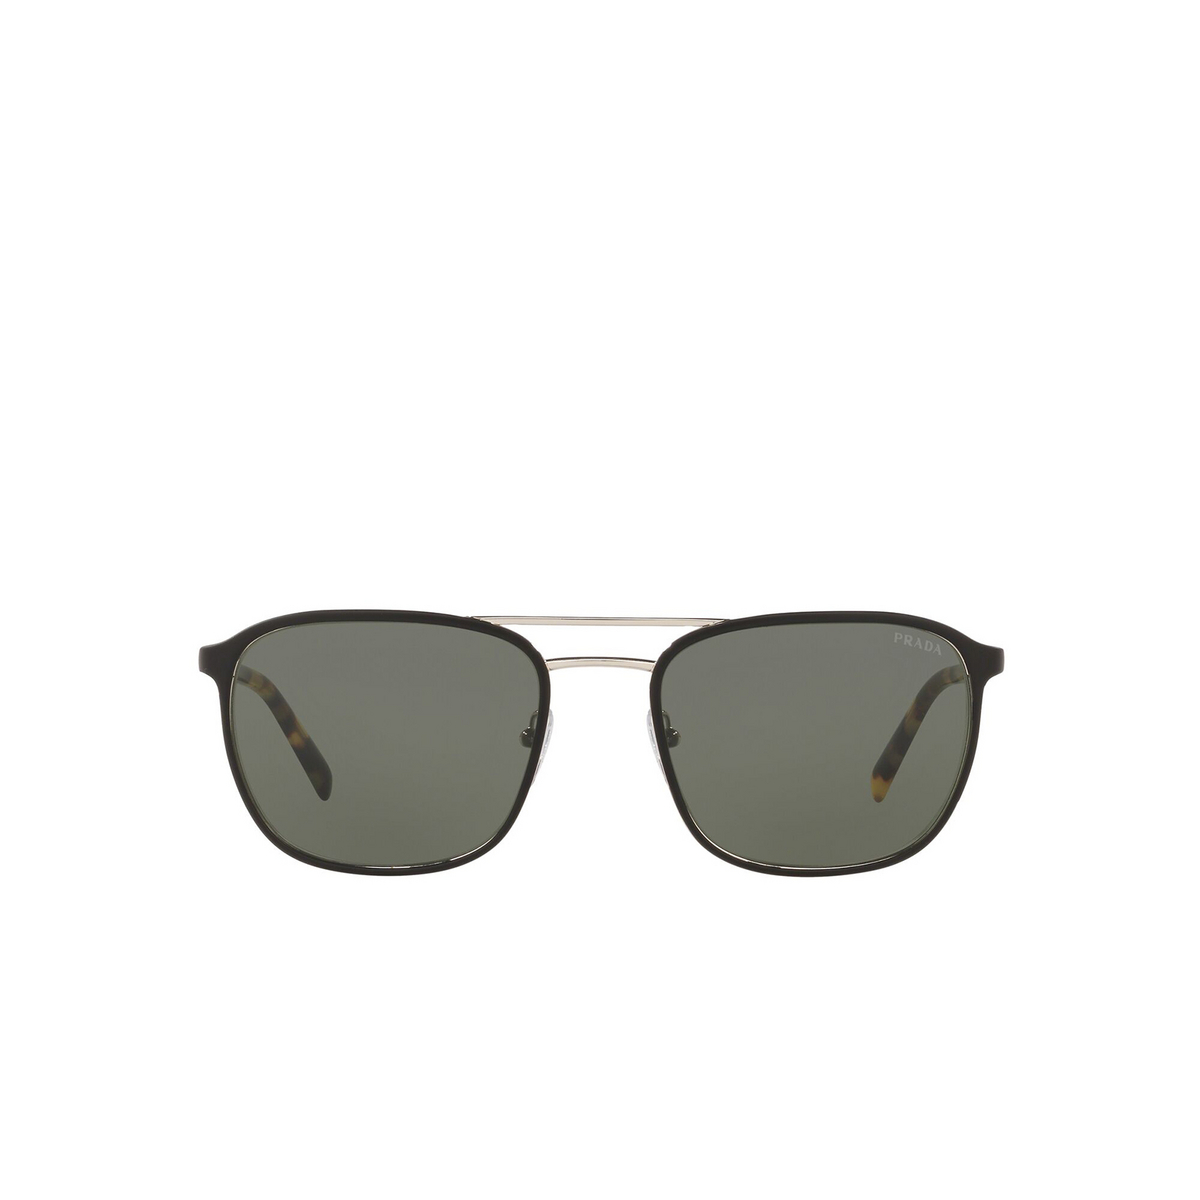 Prada® Square Sunglasses: Conceptual PR 75VS color Top Matte Black On Silver 5240B2 - front view.